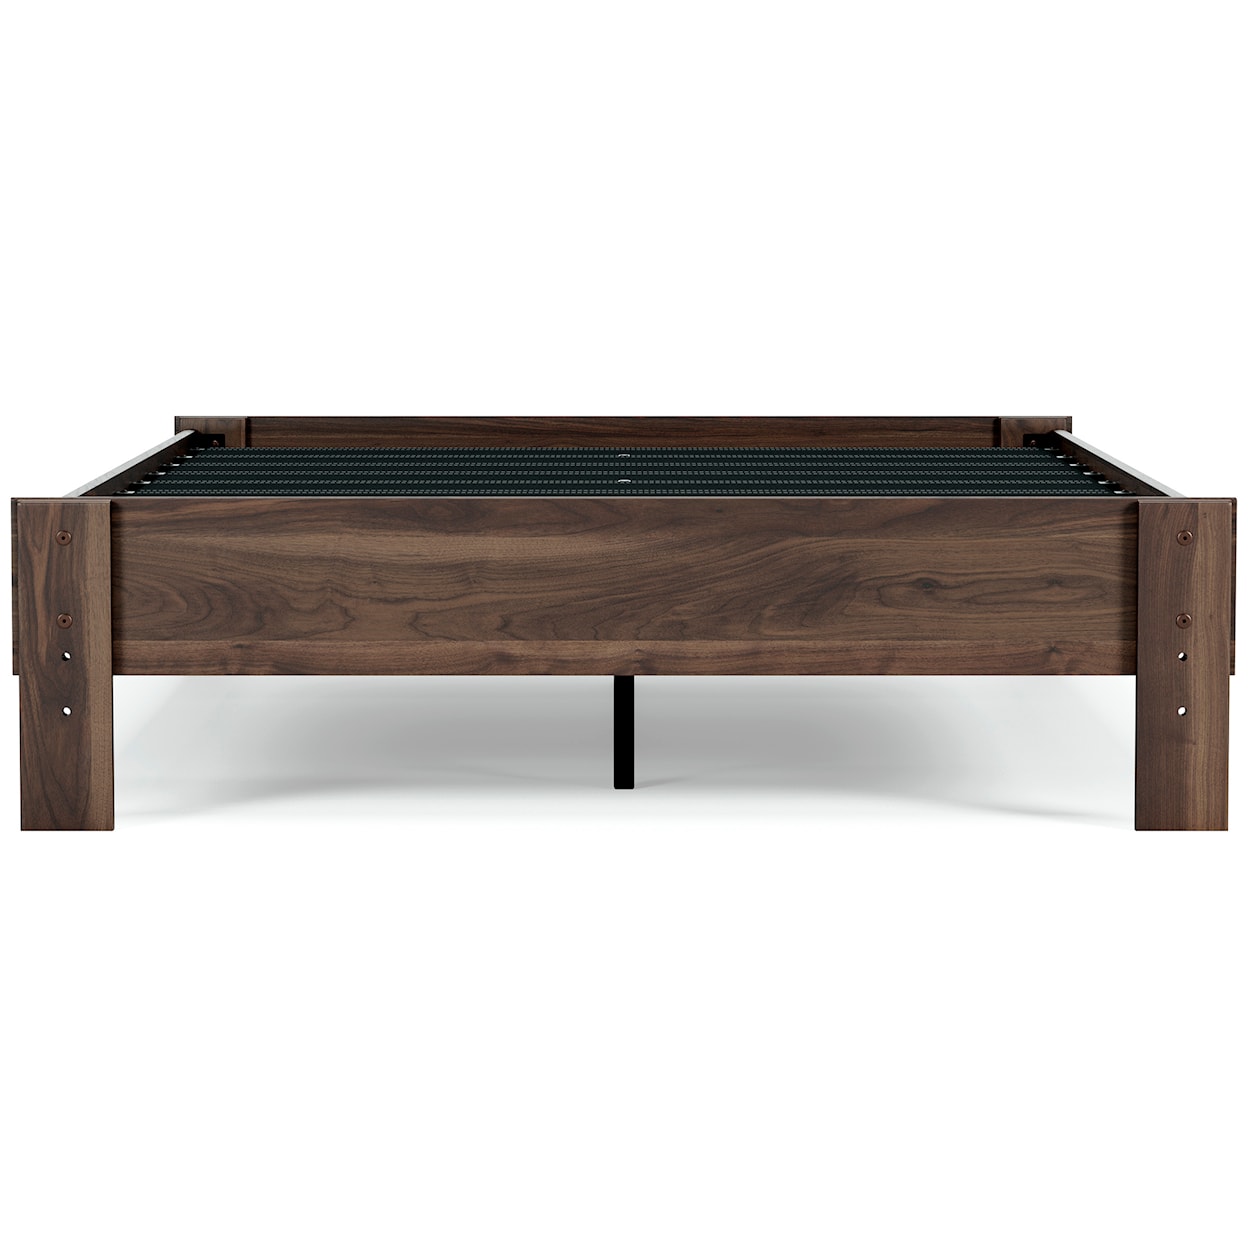 Ashley Furniture Signature Design Calverson Full Platform Bed